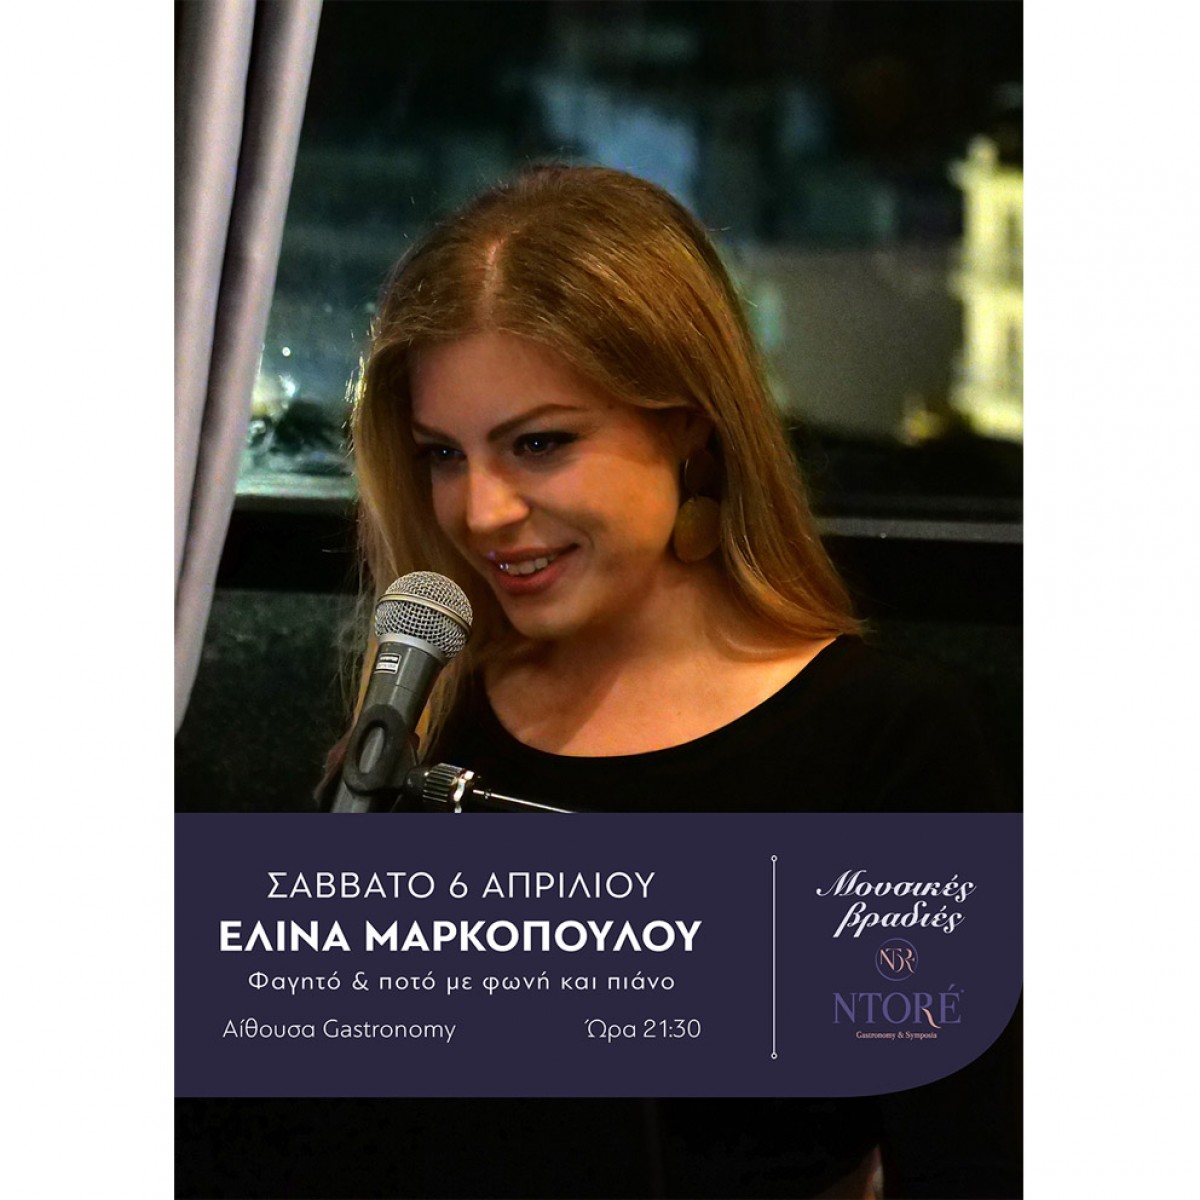 Φαγητό και ποτό με την Ελίνα Μαρκοπούλου στη φωνή και το πιάνο και την καλύτερη θέα της πόλης! Σάββατο 6 Απριλίου, 21:30